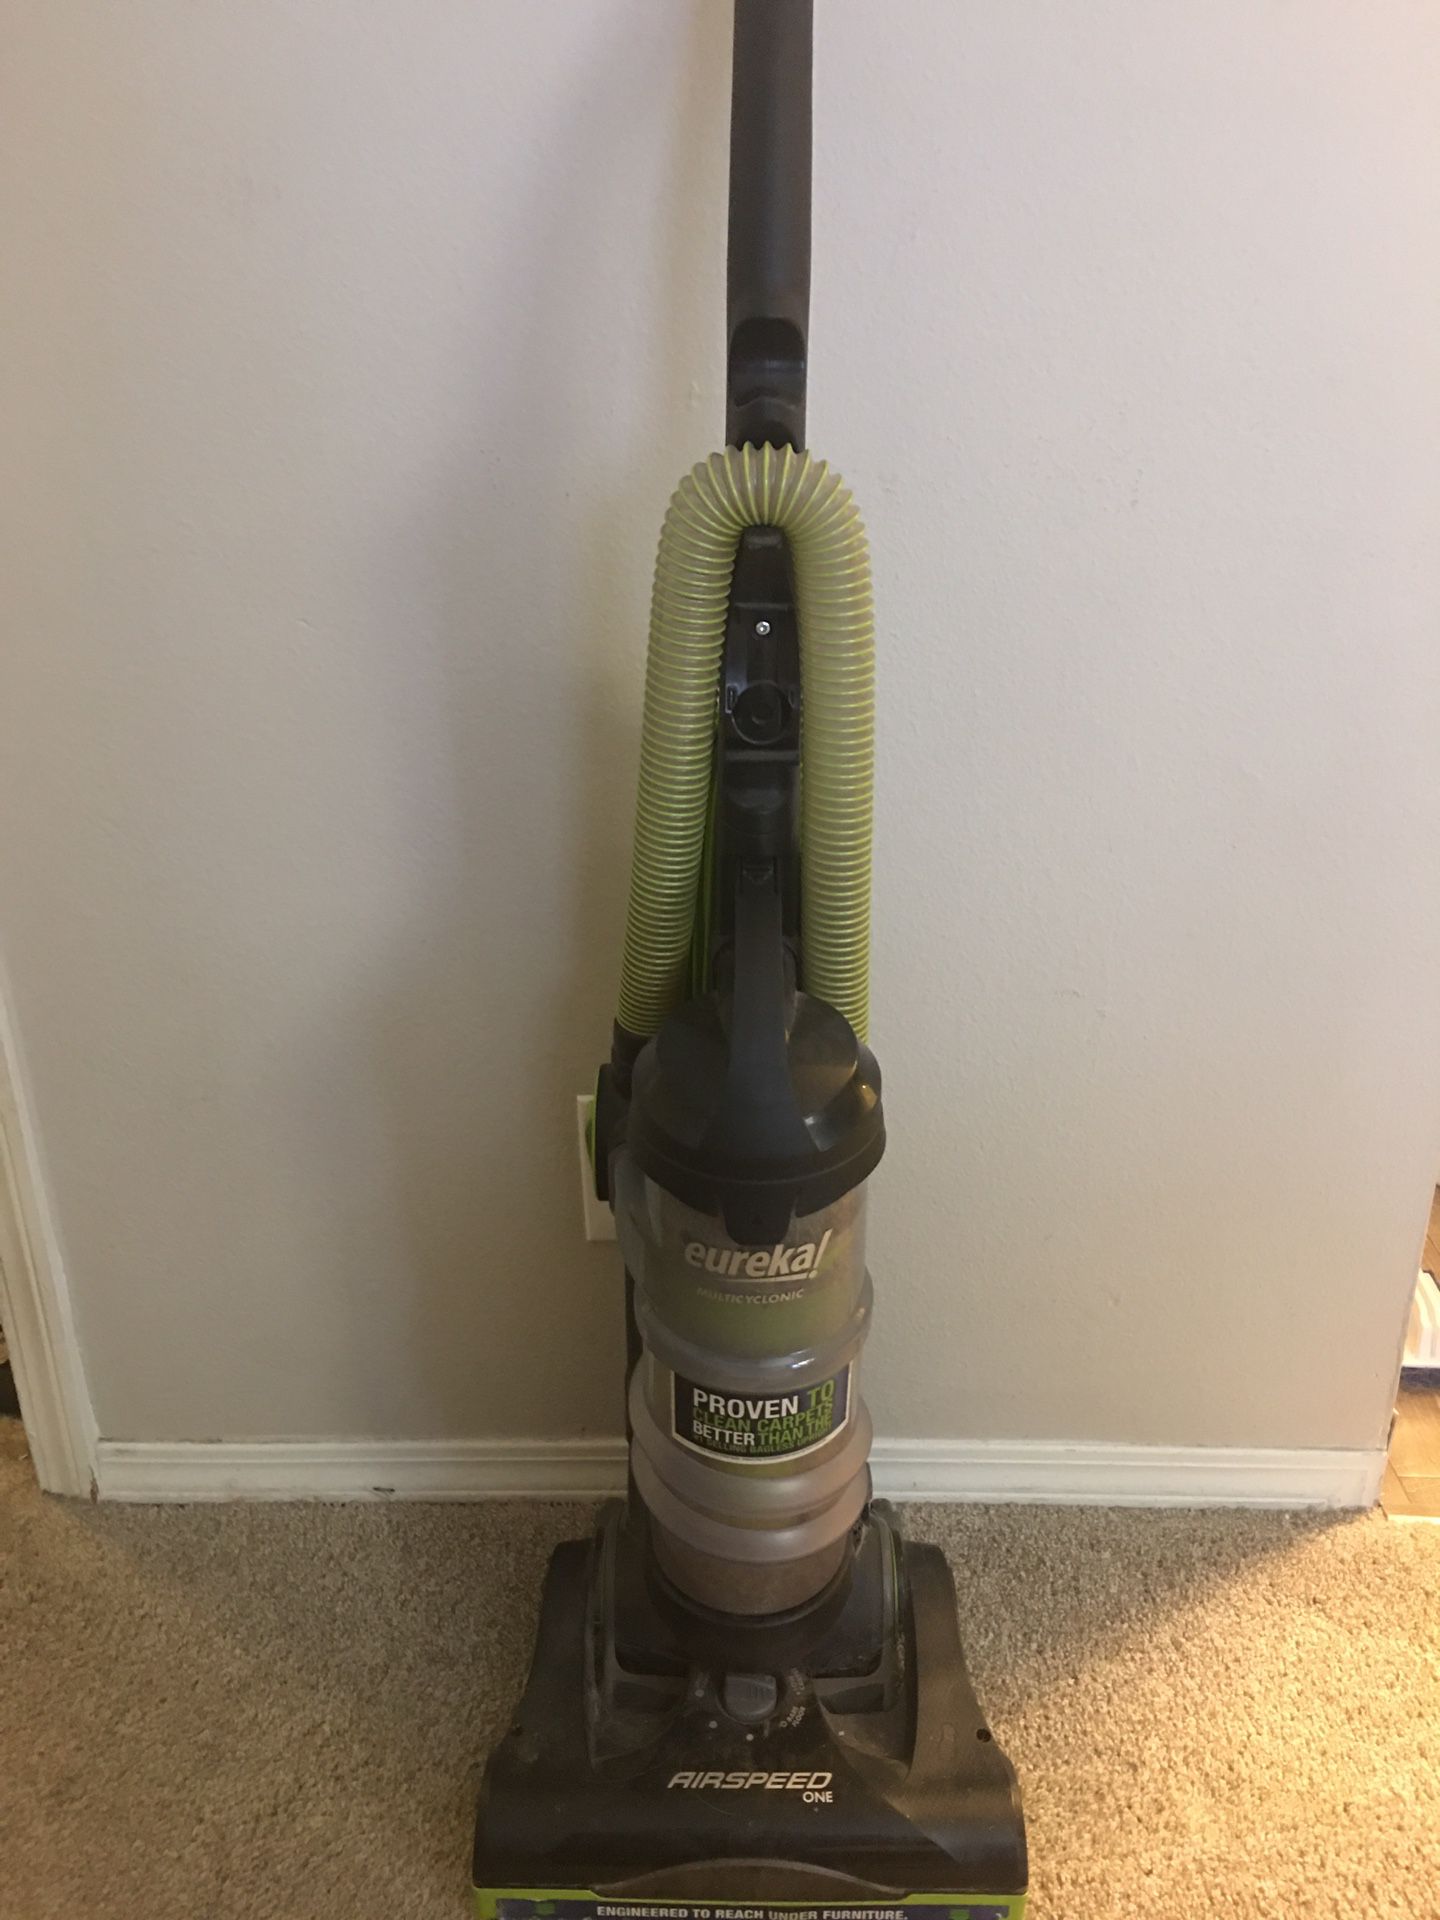 Eureka Vacuum. Lightly used.